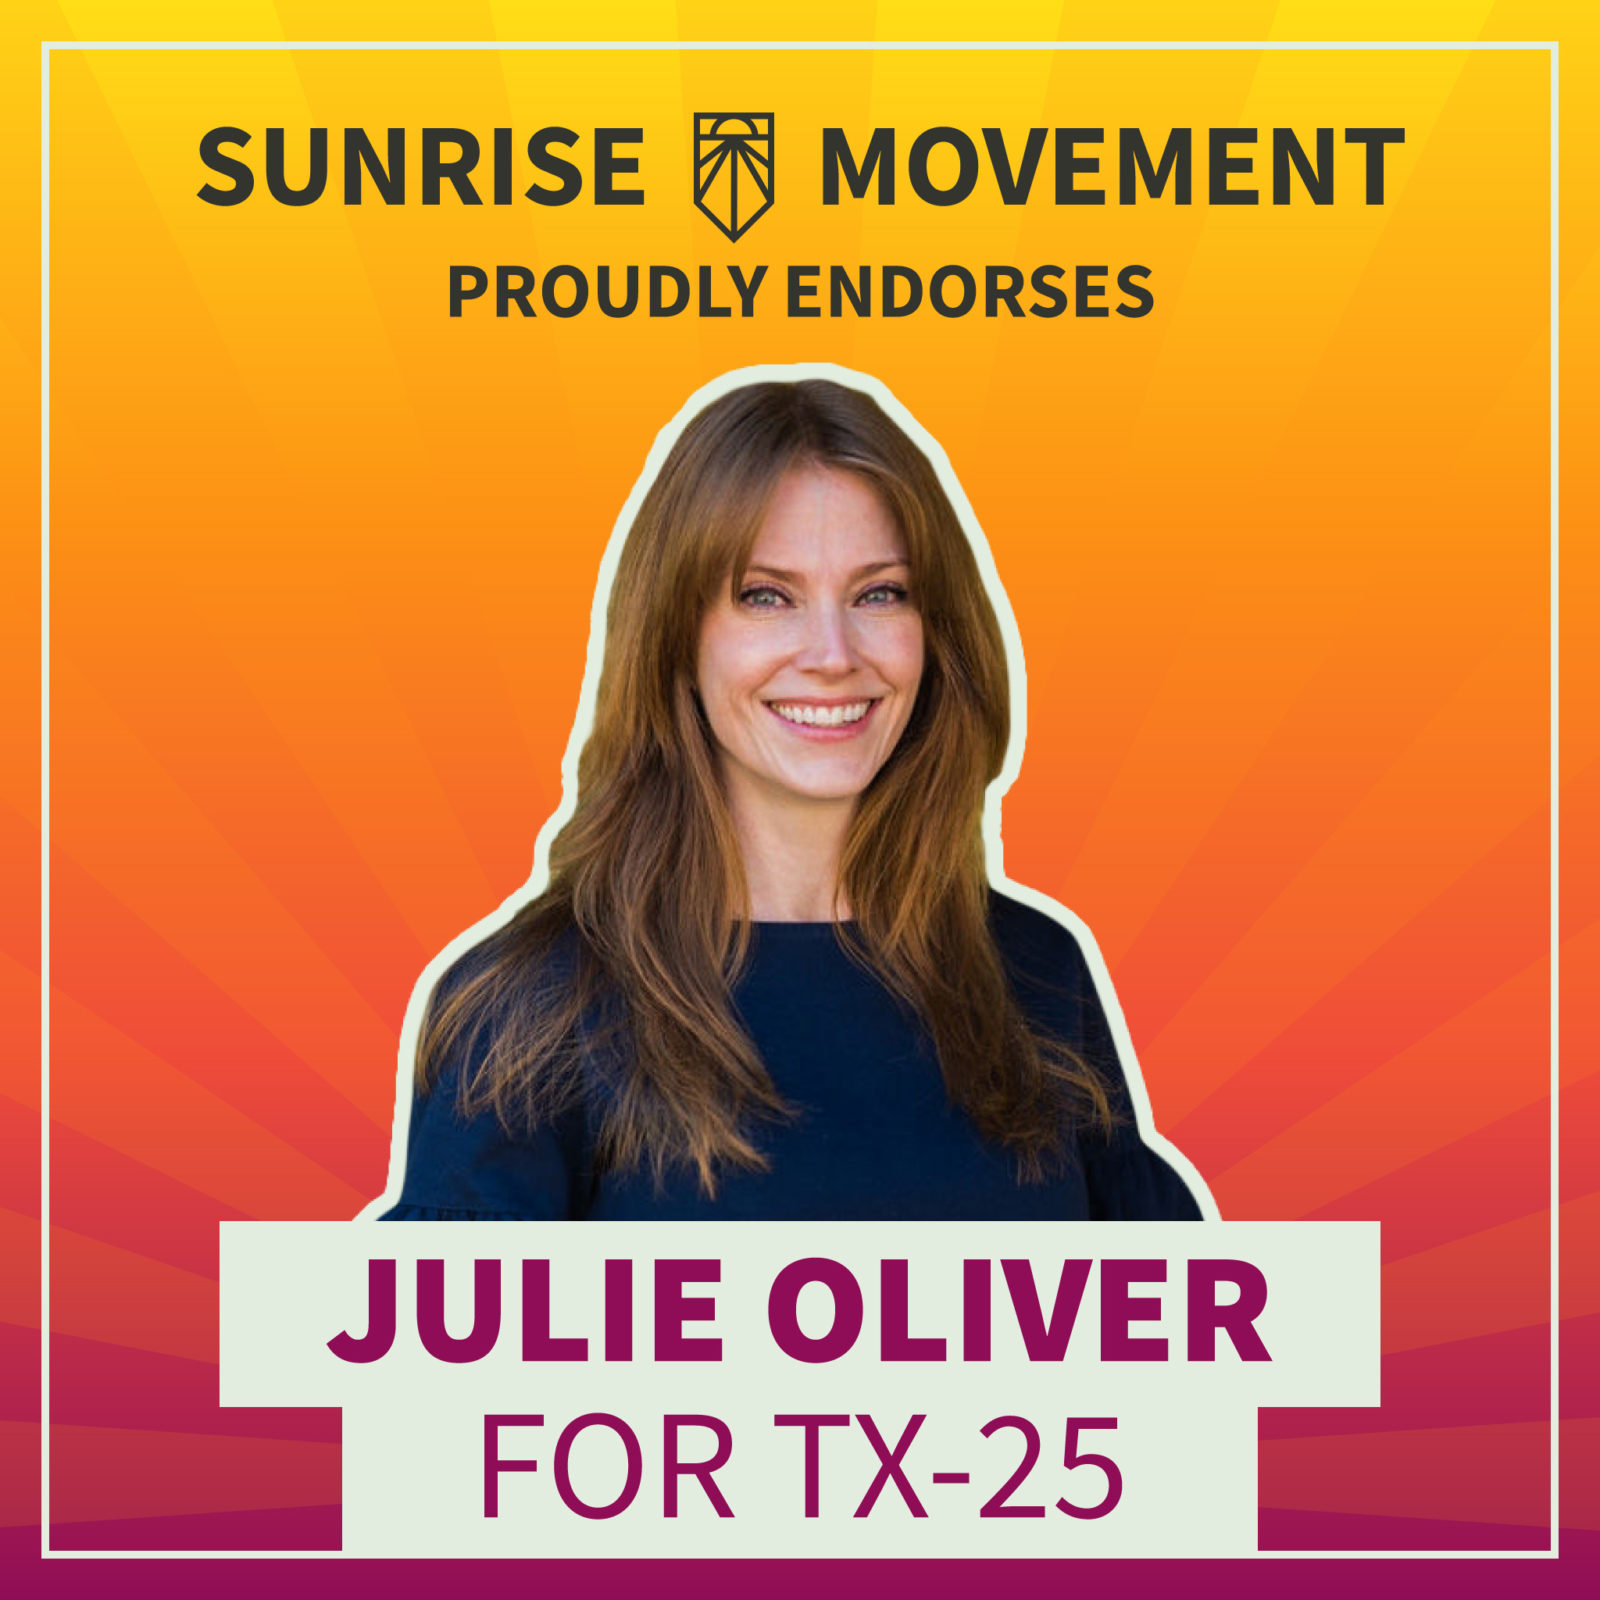 Una foto de Julie Oliver con texto: Sunrise Movement apoya con orgullo a Julie Oliver para TX-25.